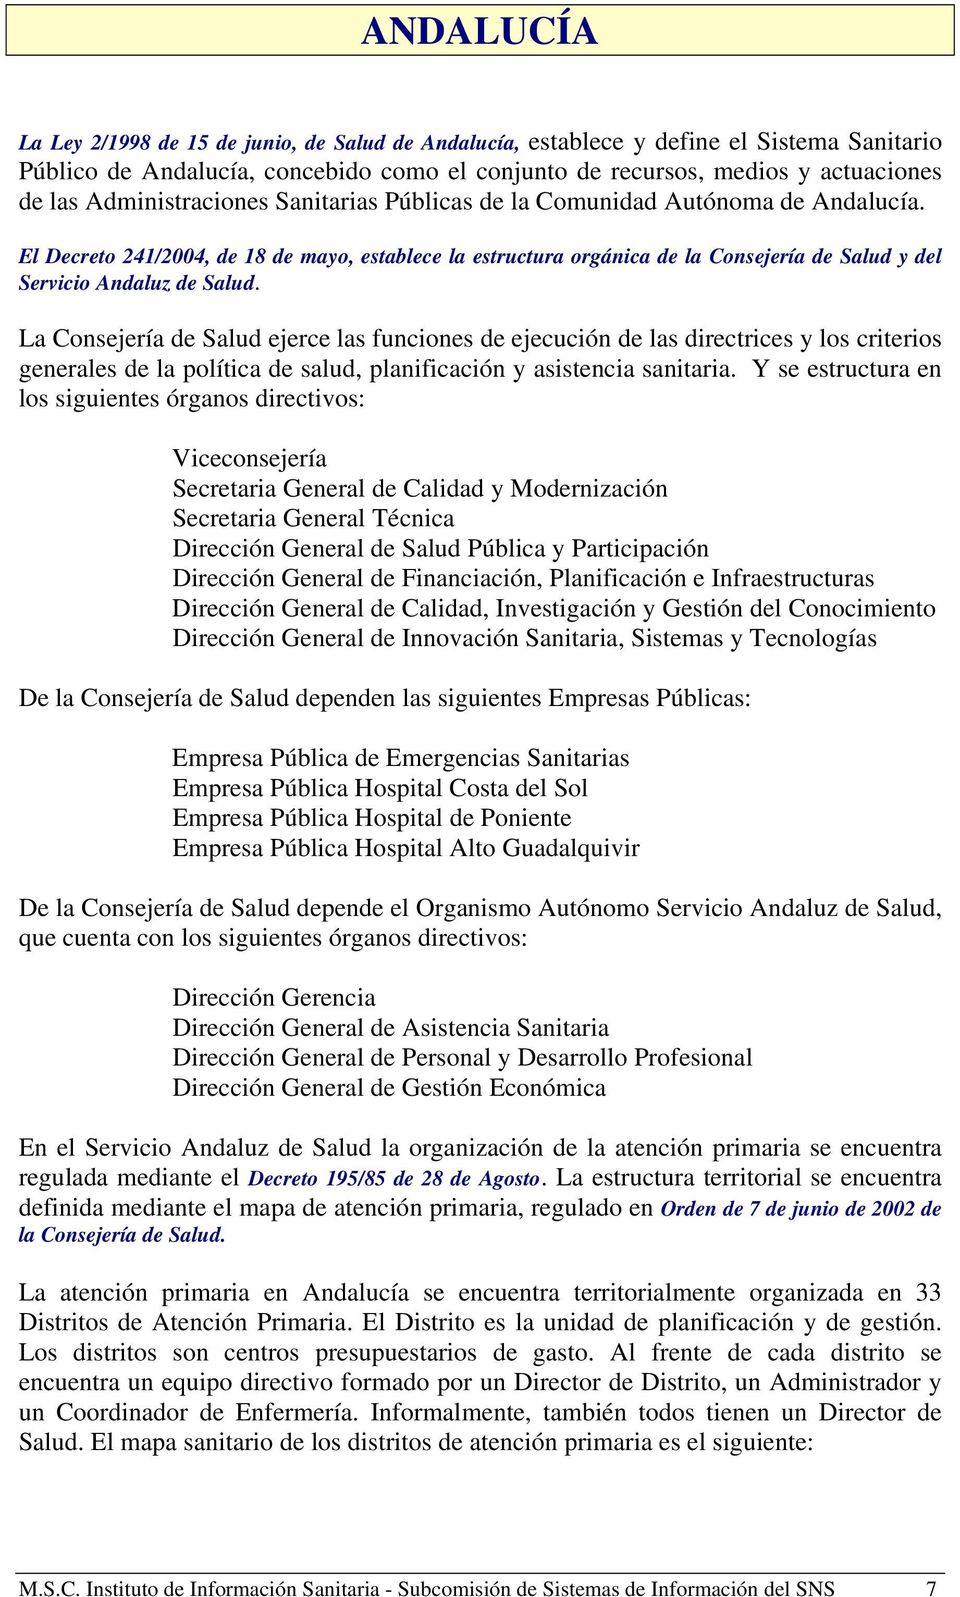 El Decreto 241/2004, de 18 de mayo, establece la estructura orgánica de la Consejería de Salud y del Servicio Andaluz de Salud.